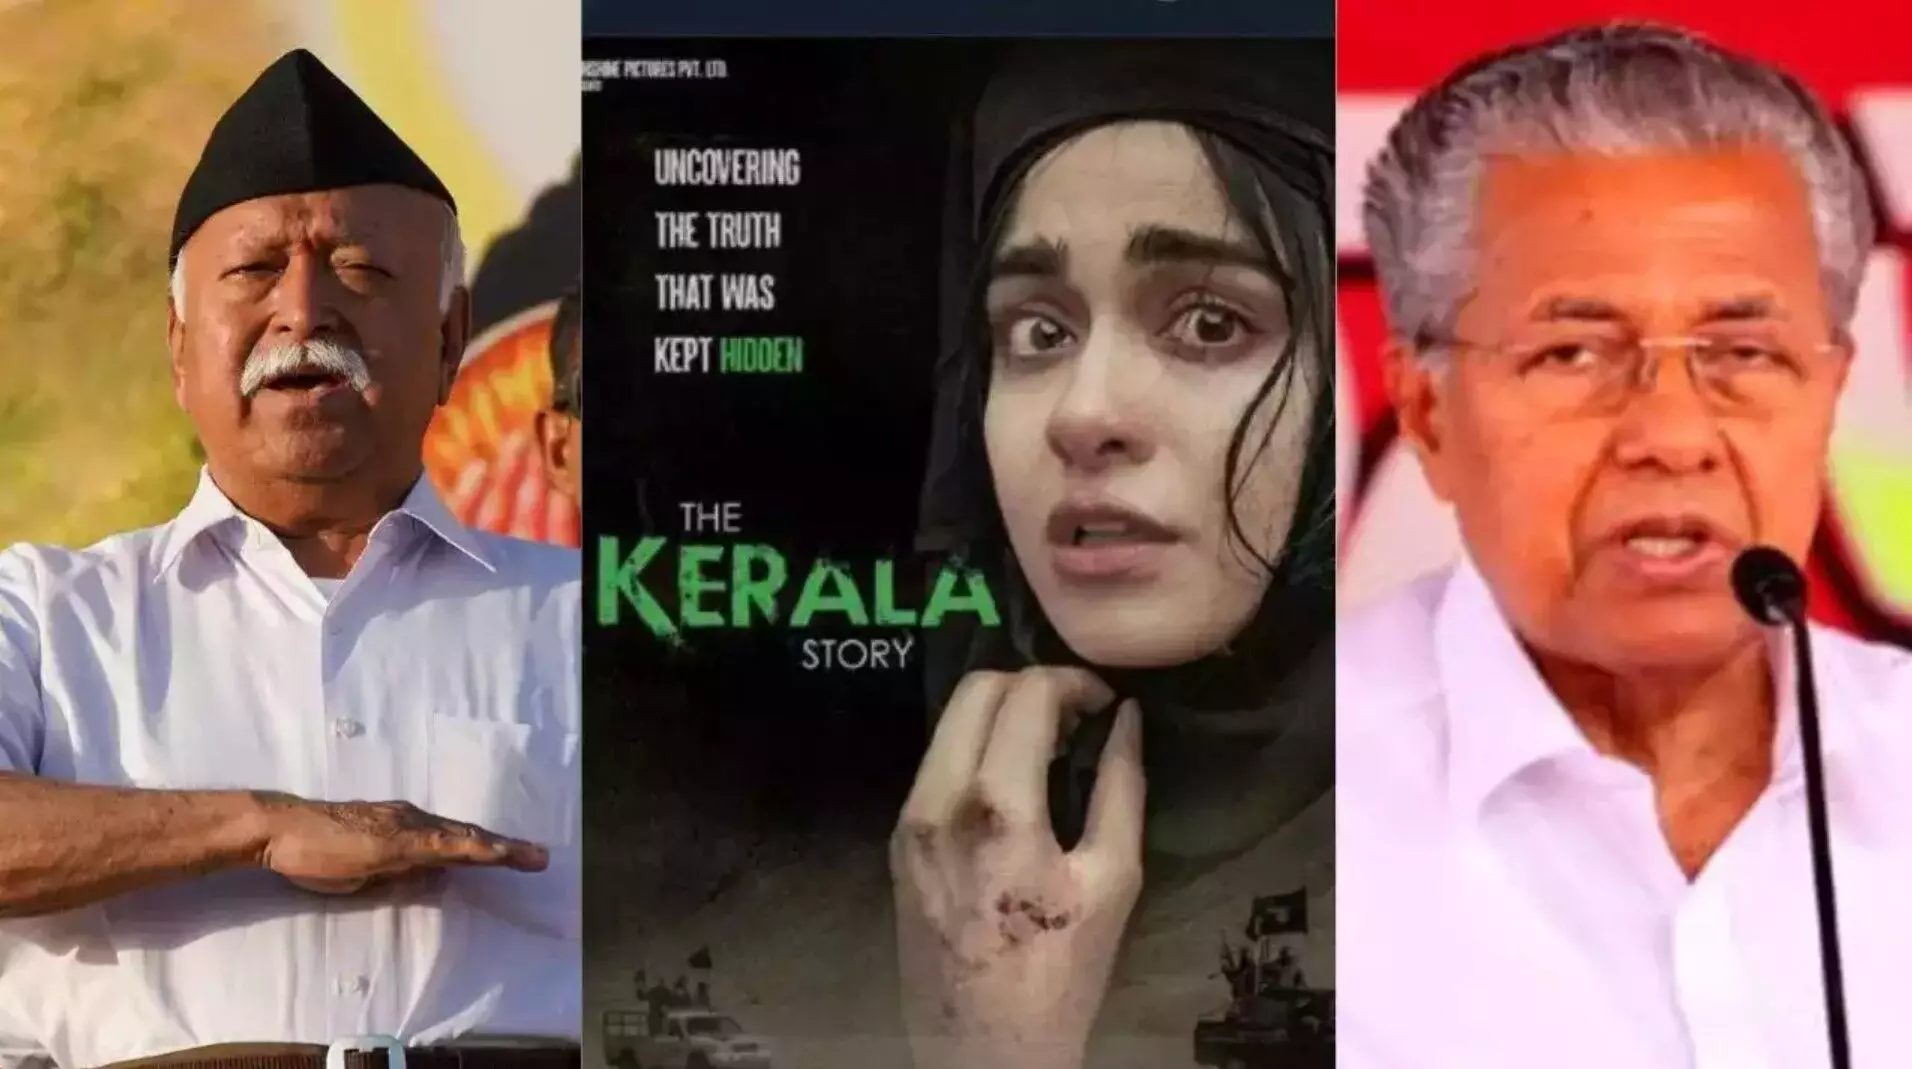 The Kerala Story: संघ परिवार के एजेंडे का प्रचार कर रही है ‘द केरल स्टोरी’,  फिल्म निर्माताओं पर CM विजयन का निशाना